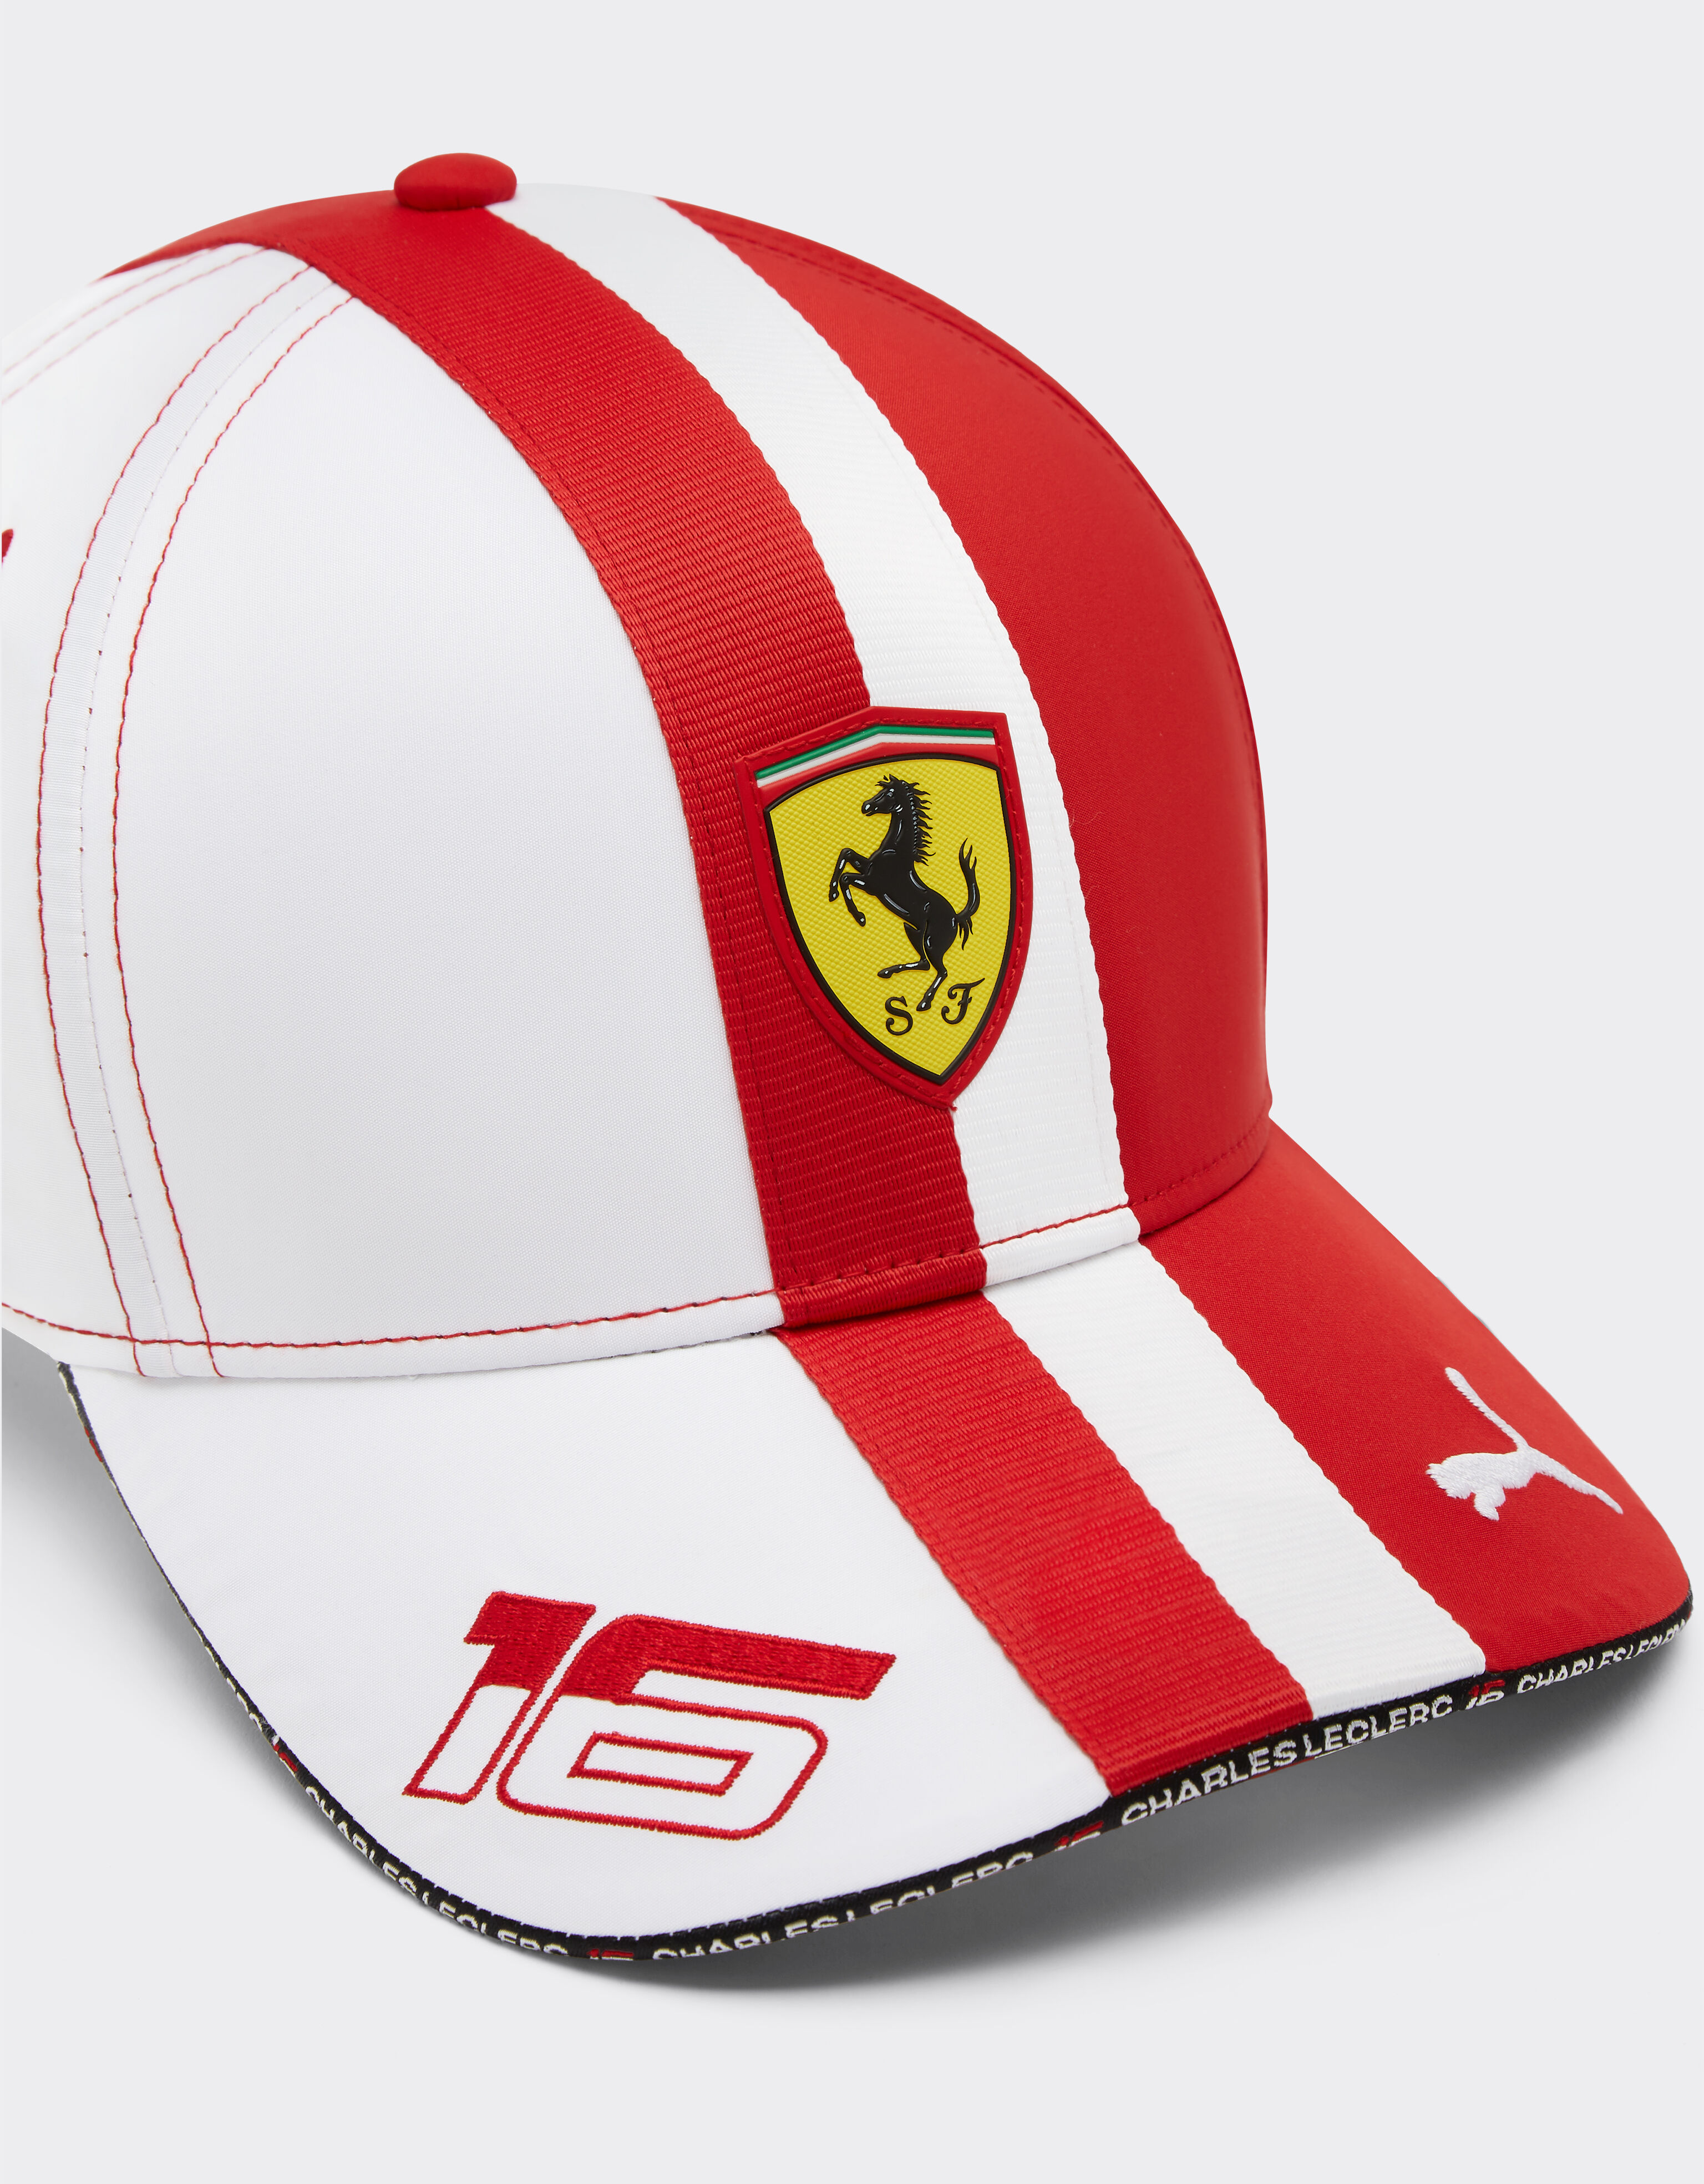 Ferrari Puma for Scuderia Ferrari Leclerc hat - Monaco Special Edition Optical White F1214f